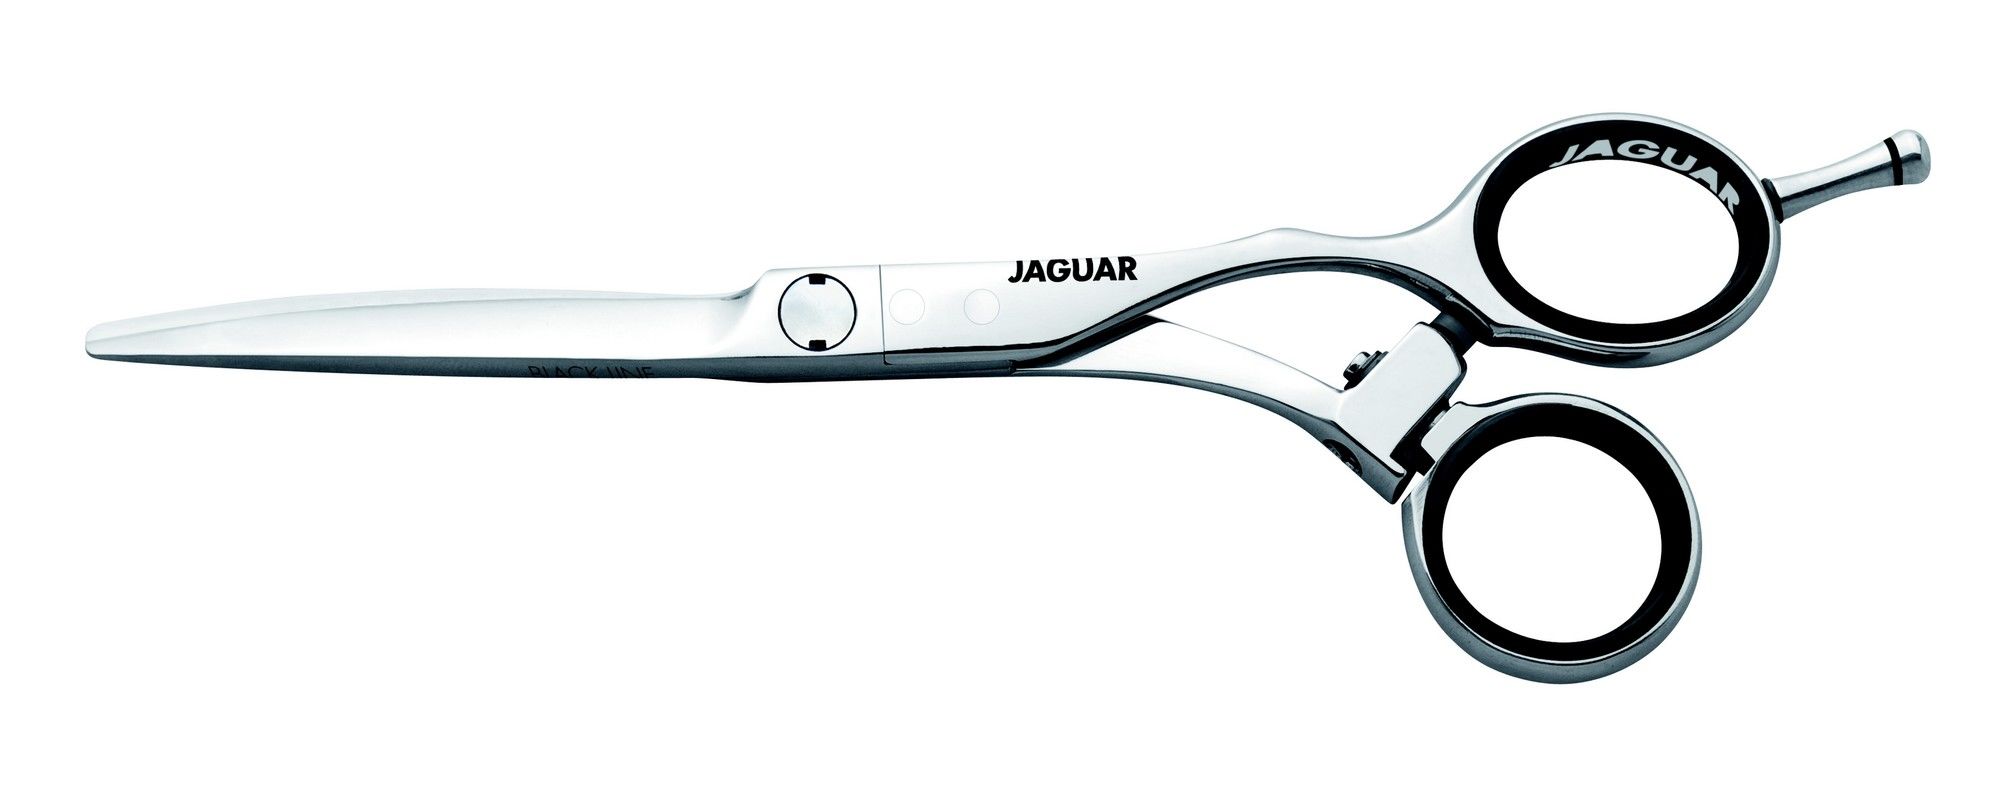 Afbeelding van Jaguar Knipschaar Evolution Flex 5,75inch